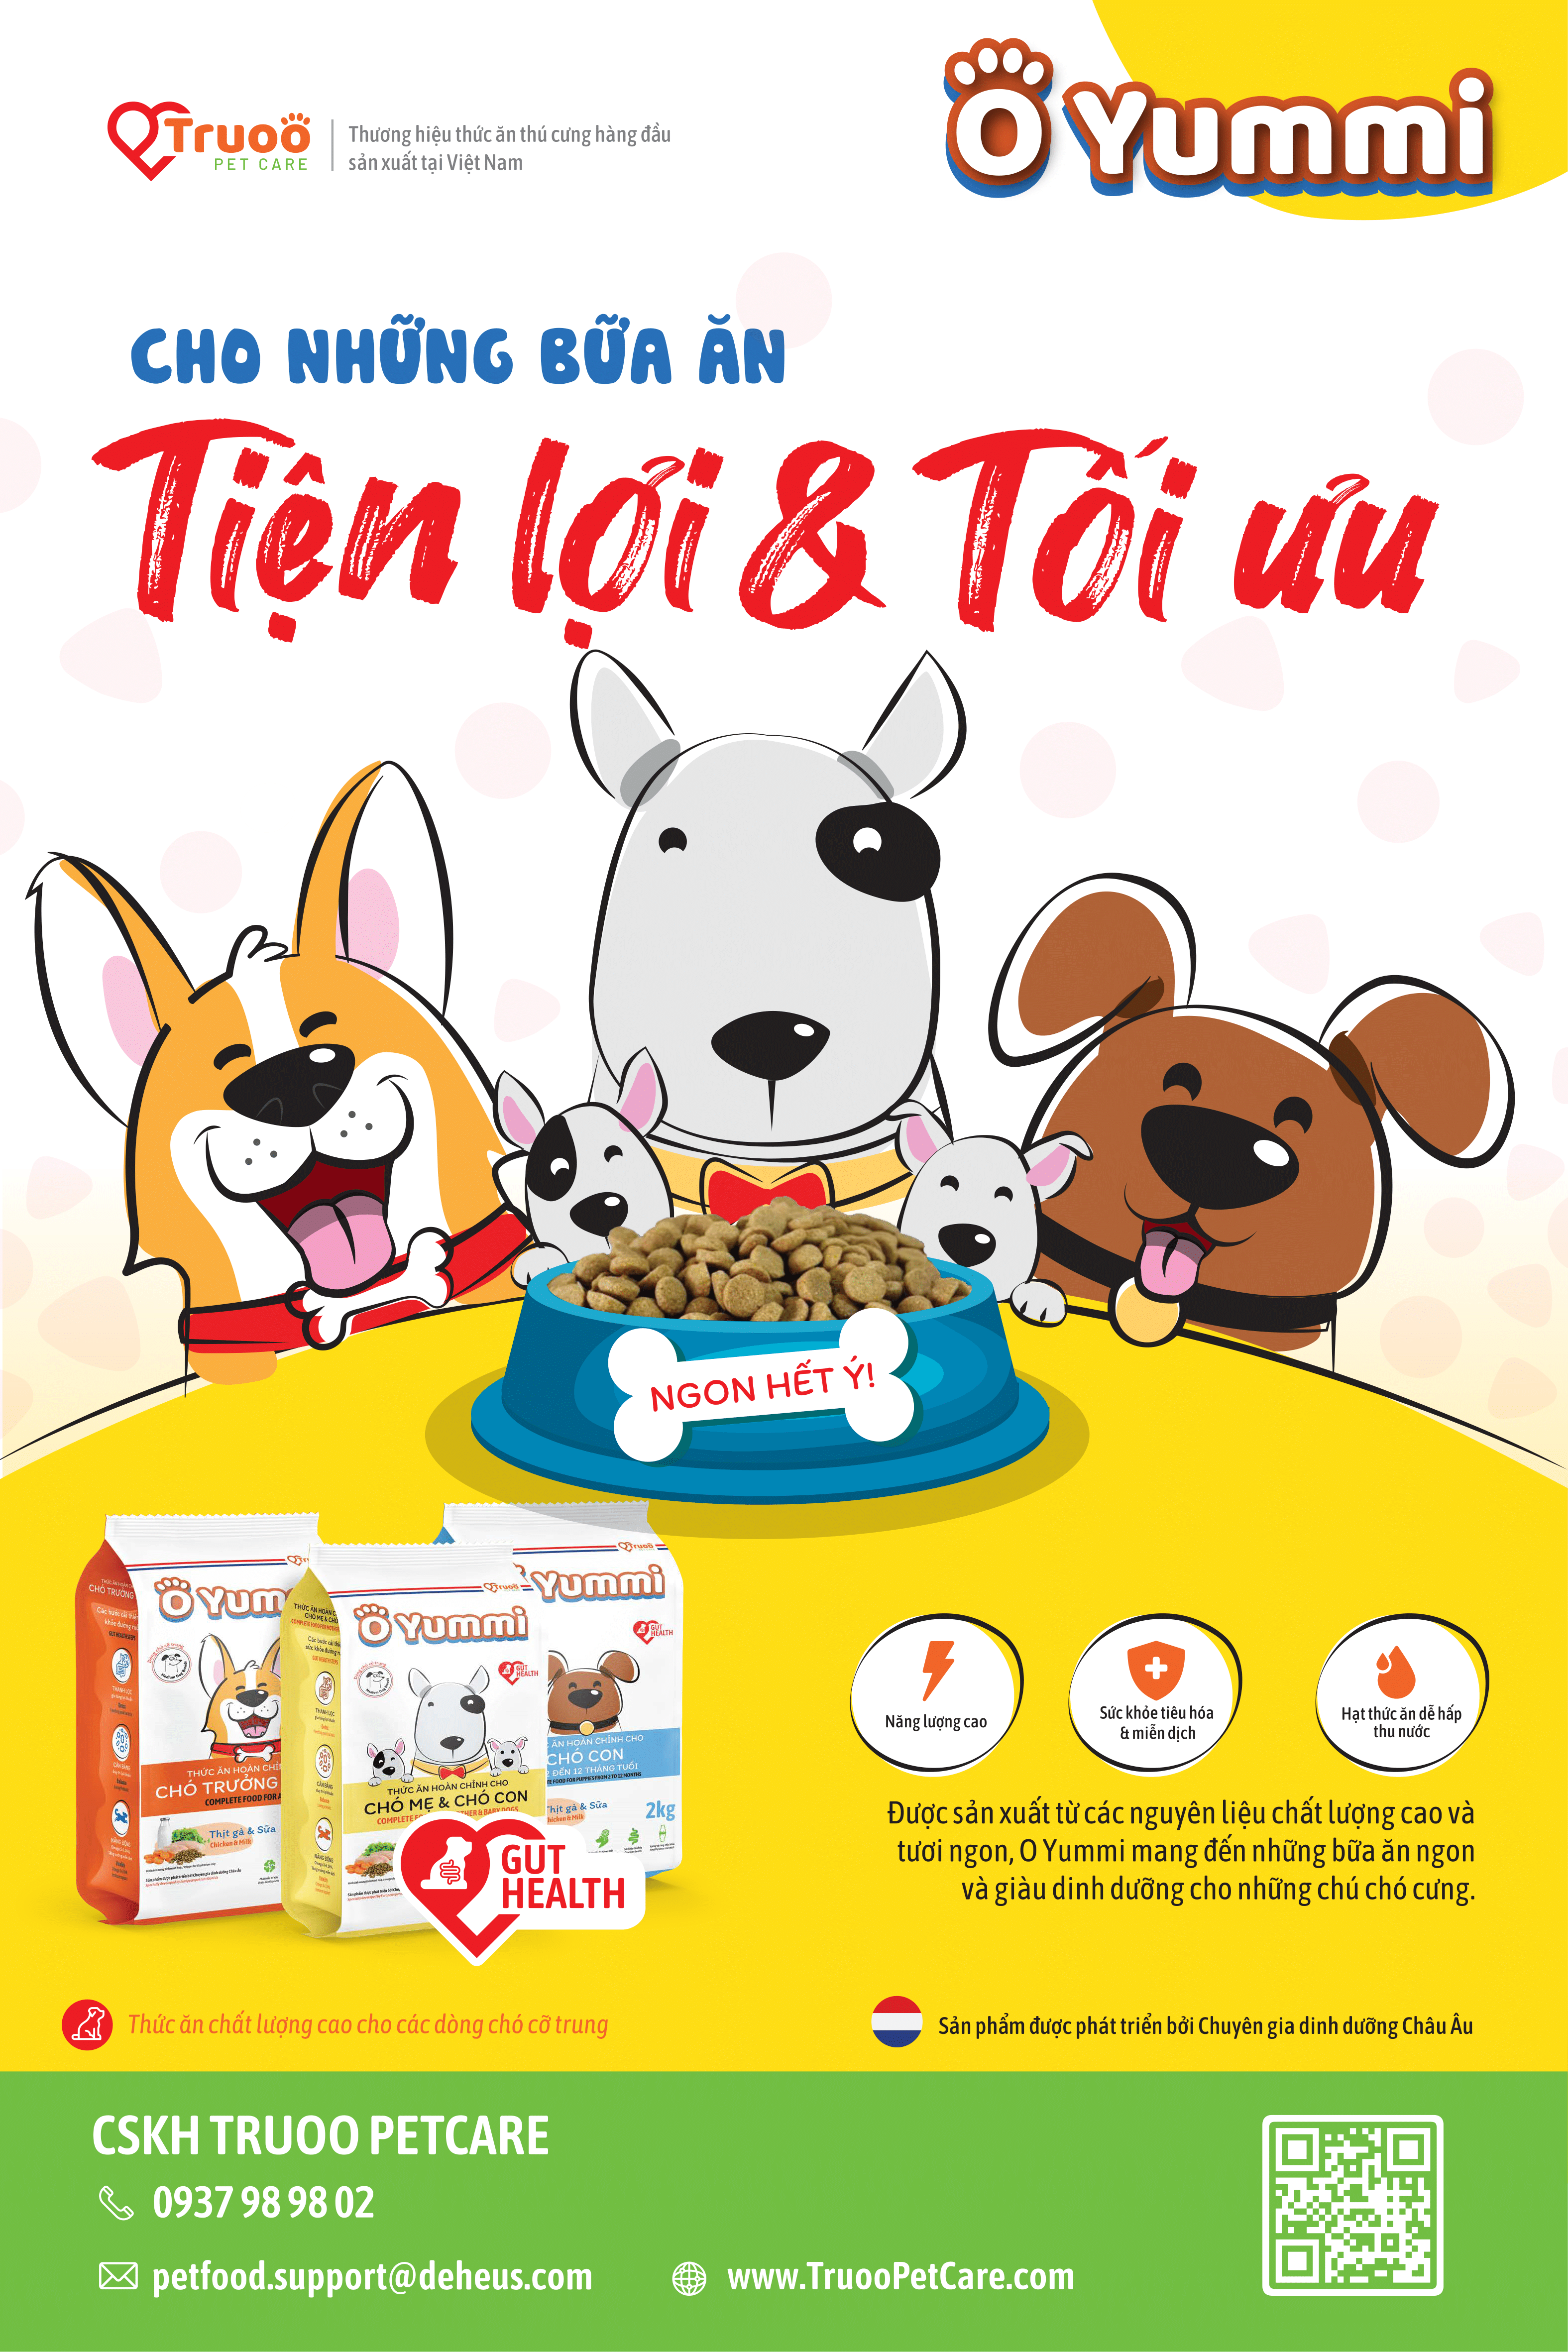 Truoo Pet Care - Thương hiệu thức ăn thú cưng hàng đầu sản xuất tại Việt Nam